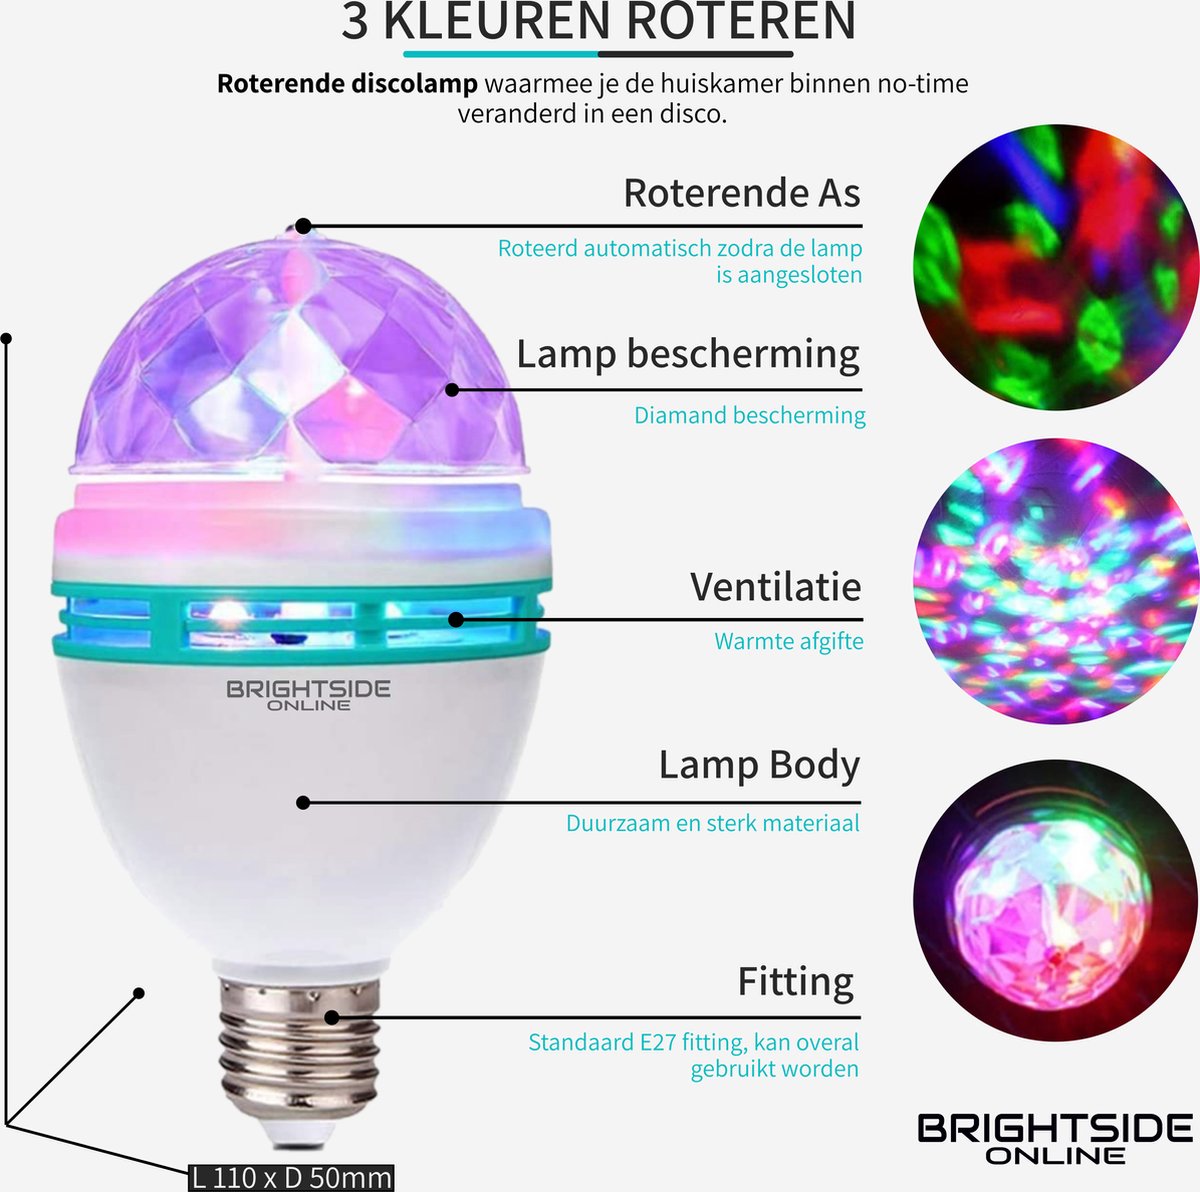 Brightside Roterende discolamp - E27 fitting - roterende discobal - 3 watt - 180 graden - LED